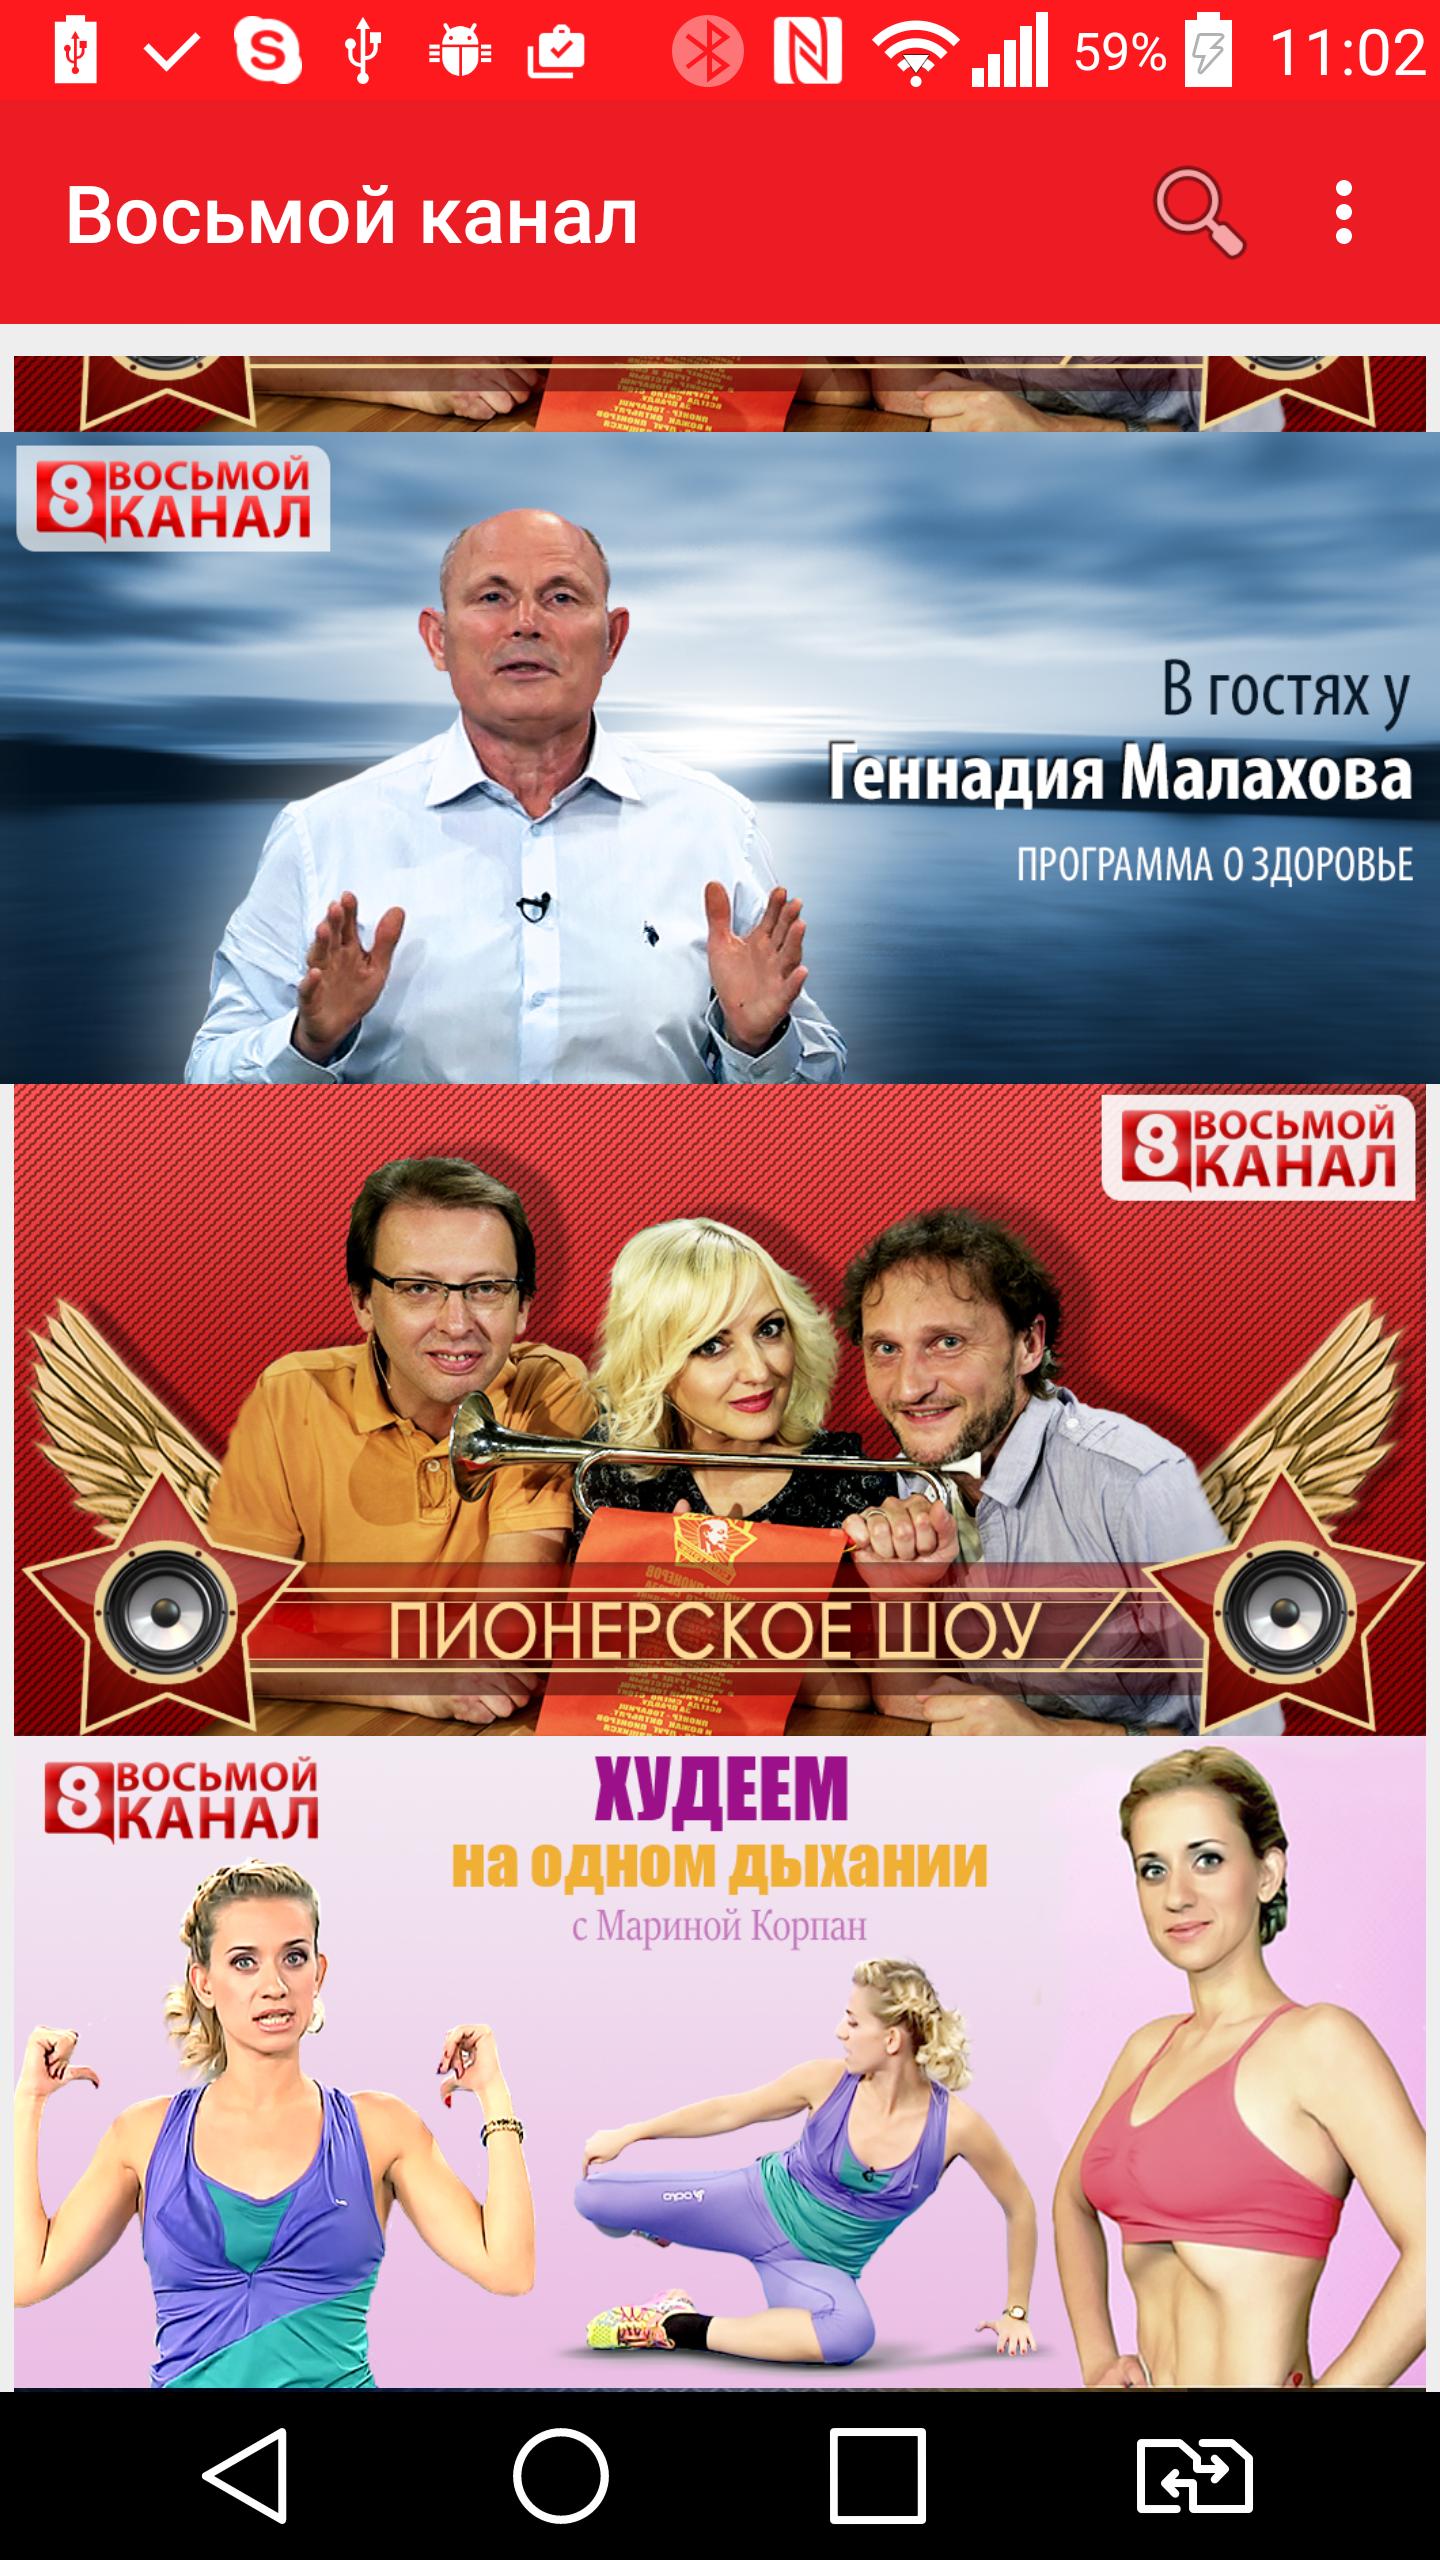 Сайт канала 8 канал. Восьмой канал. Телеканал 8 канал. 8 Канал программа. 8 Канал Новосибирск.